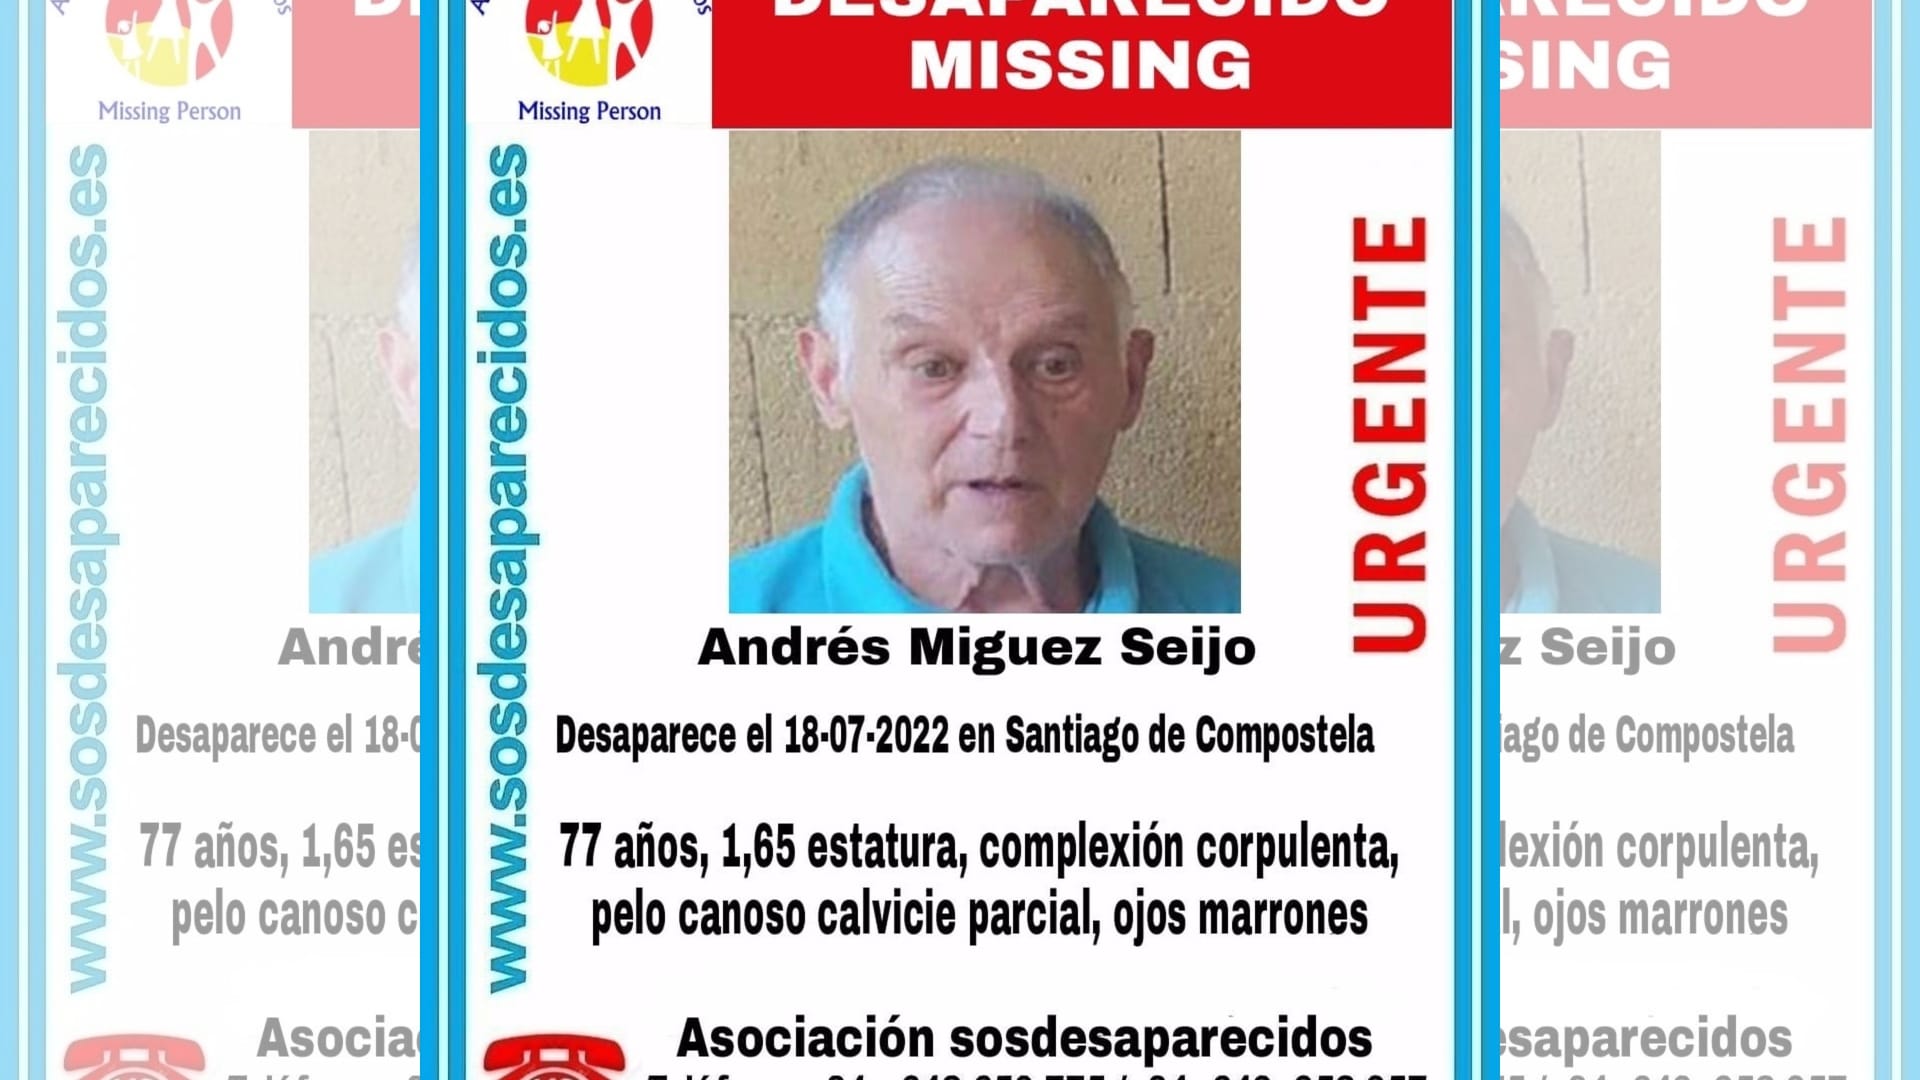 Andrés Míguez Seijo, el hombre desaparecido en Santiago | SOS DESAPARECIDOS